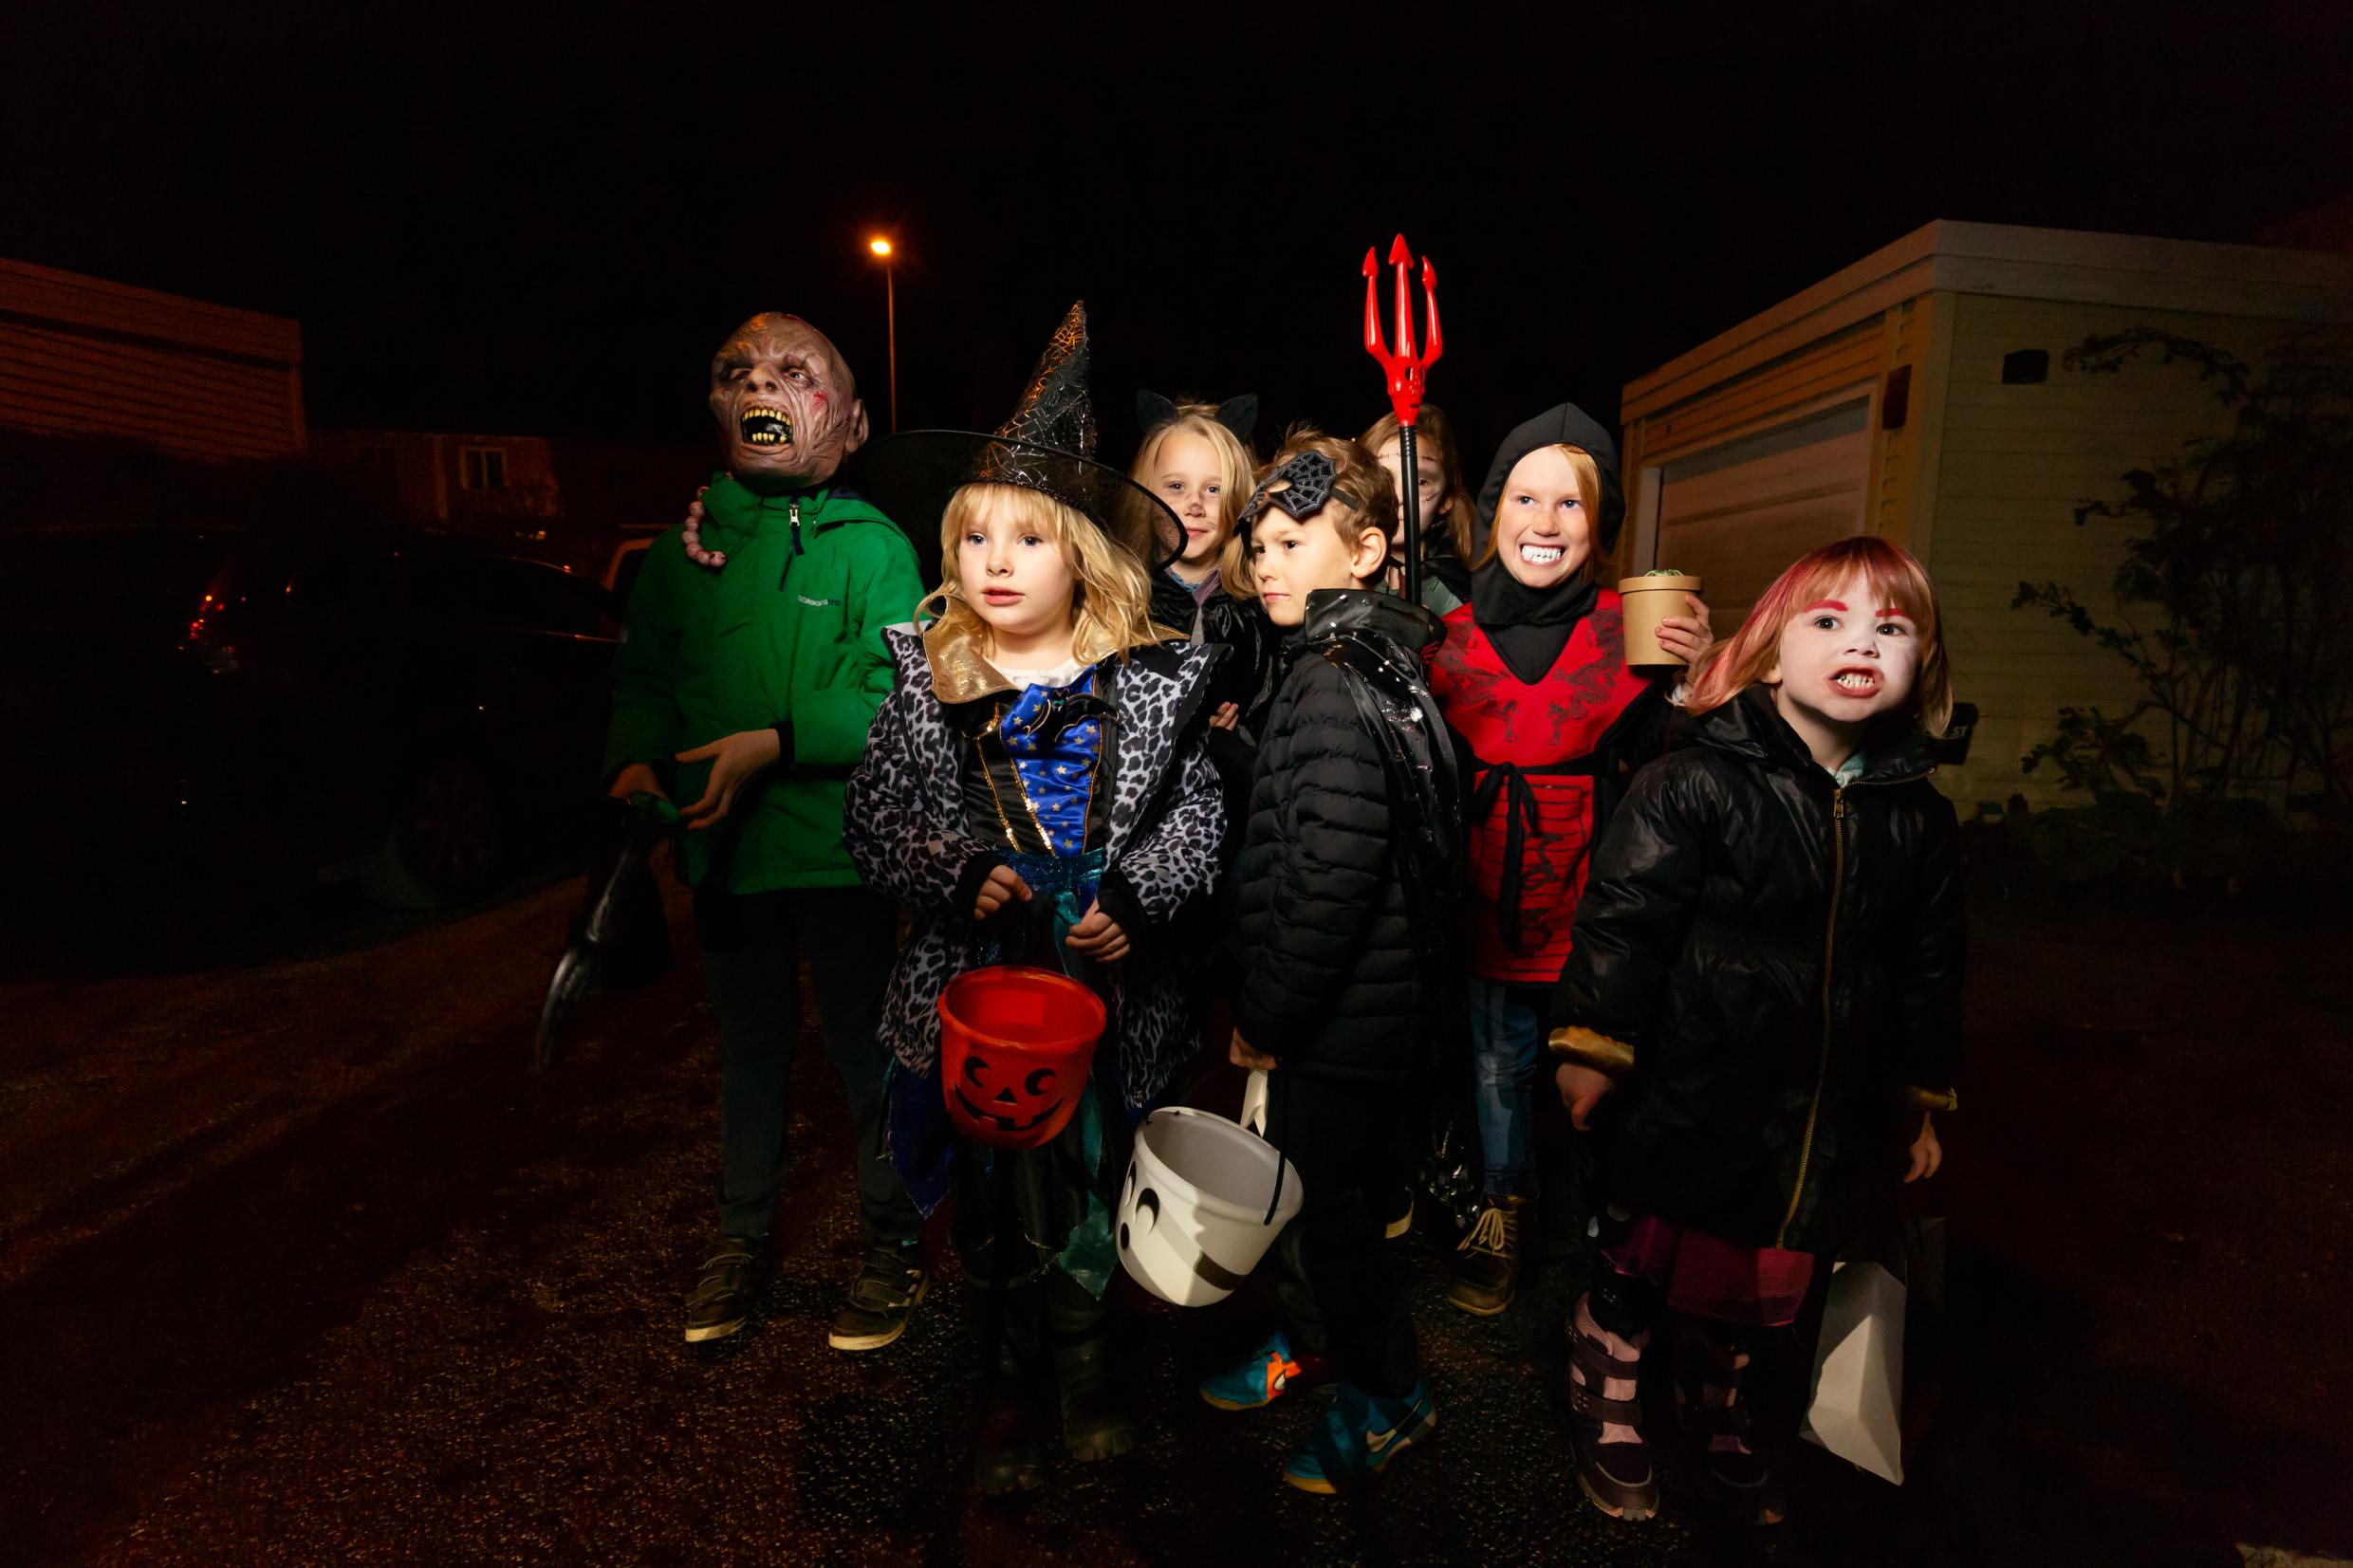 مجموعة من الأطفال يرتدون أزياء تنكرية احتفالصا بالهالوين و يسيرون في شارع مظلم ويجمعون الحلوى في أواعي بلاستيكية. 